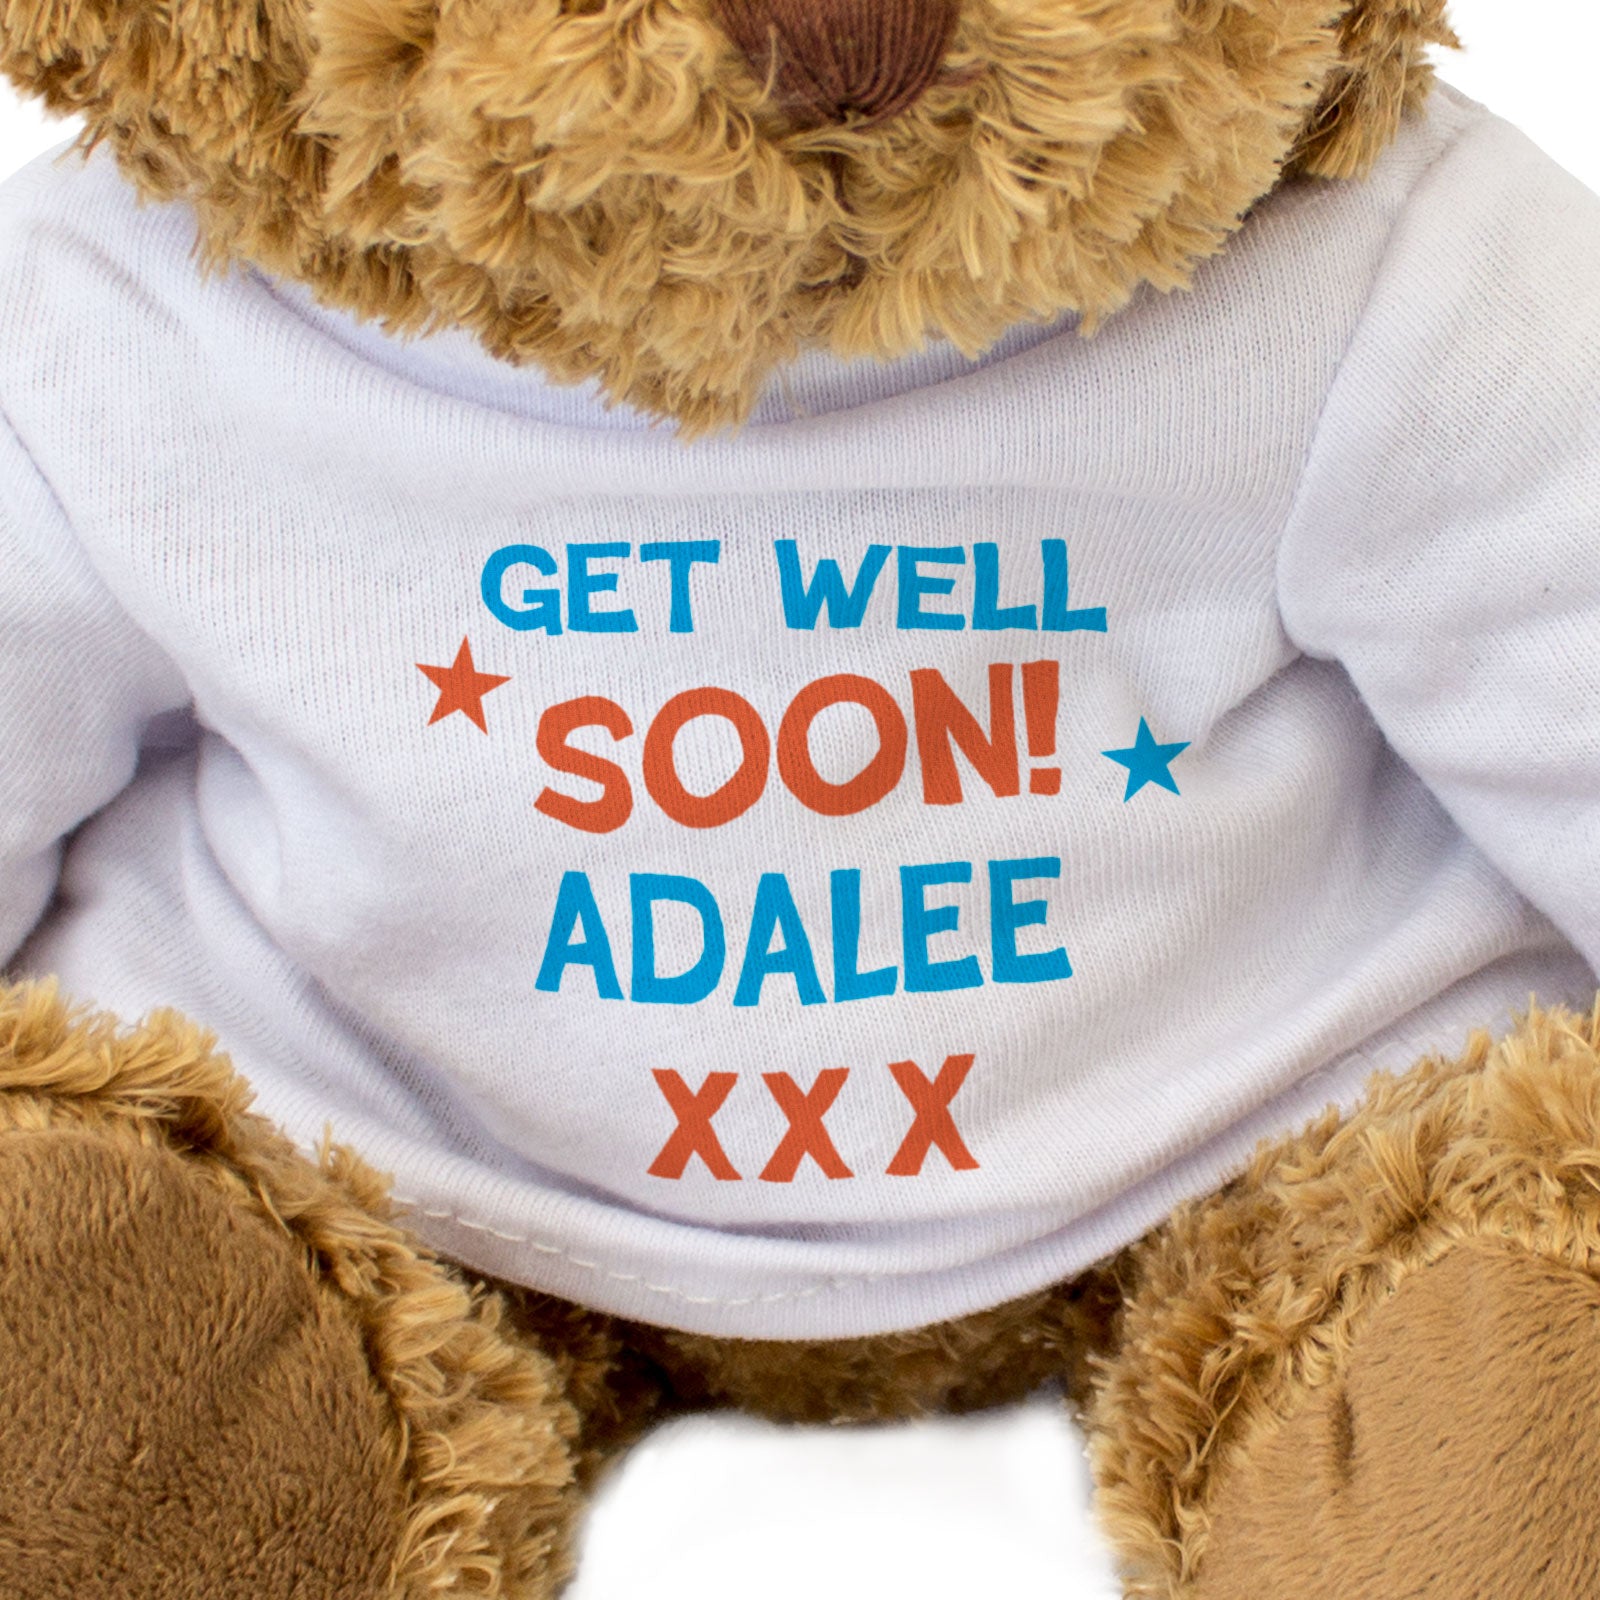 Get Well Soon Adalee - Teddy Bear